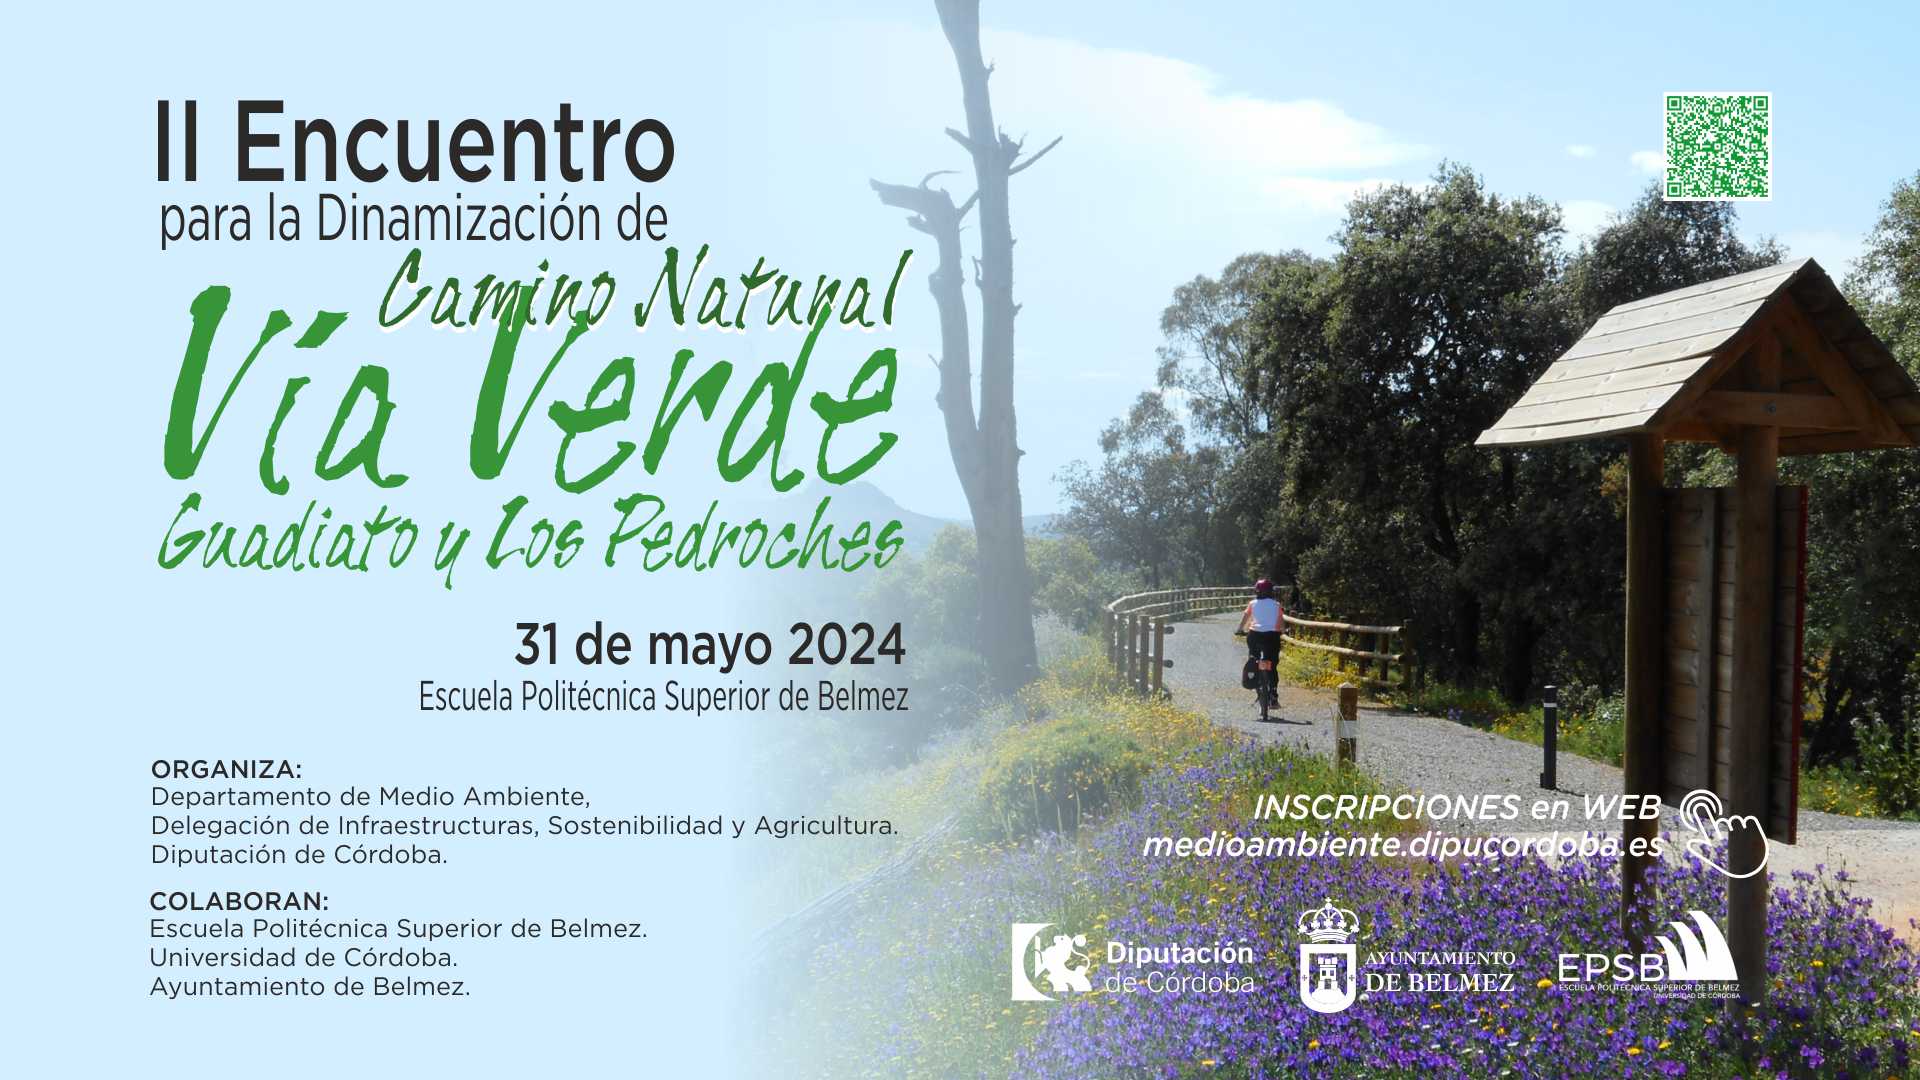 II Encuentro para la Dinamización del Camino Natural de la Vía Verde del Guadiato y Los Pedroches